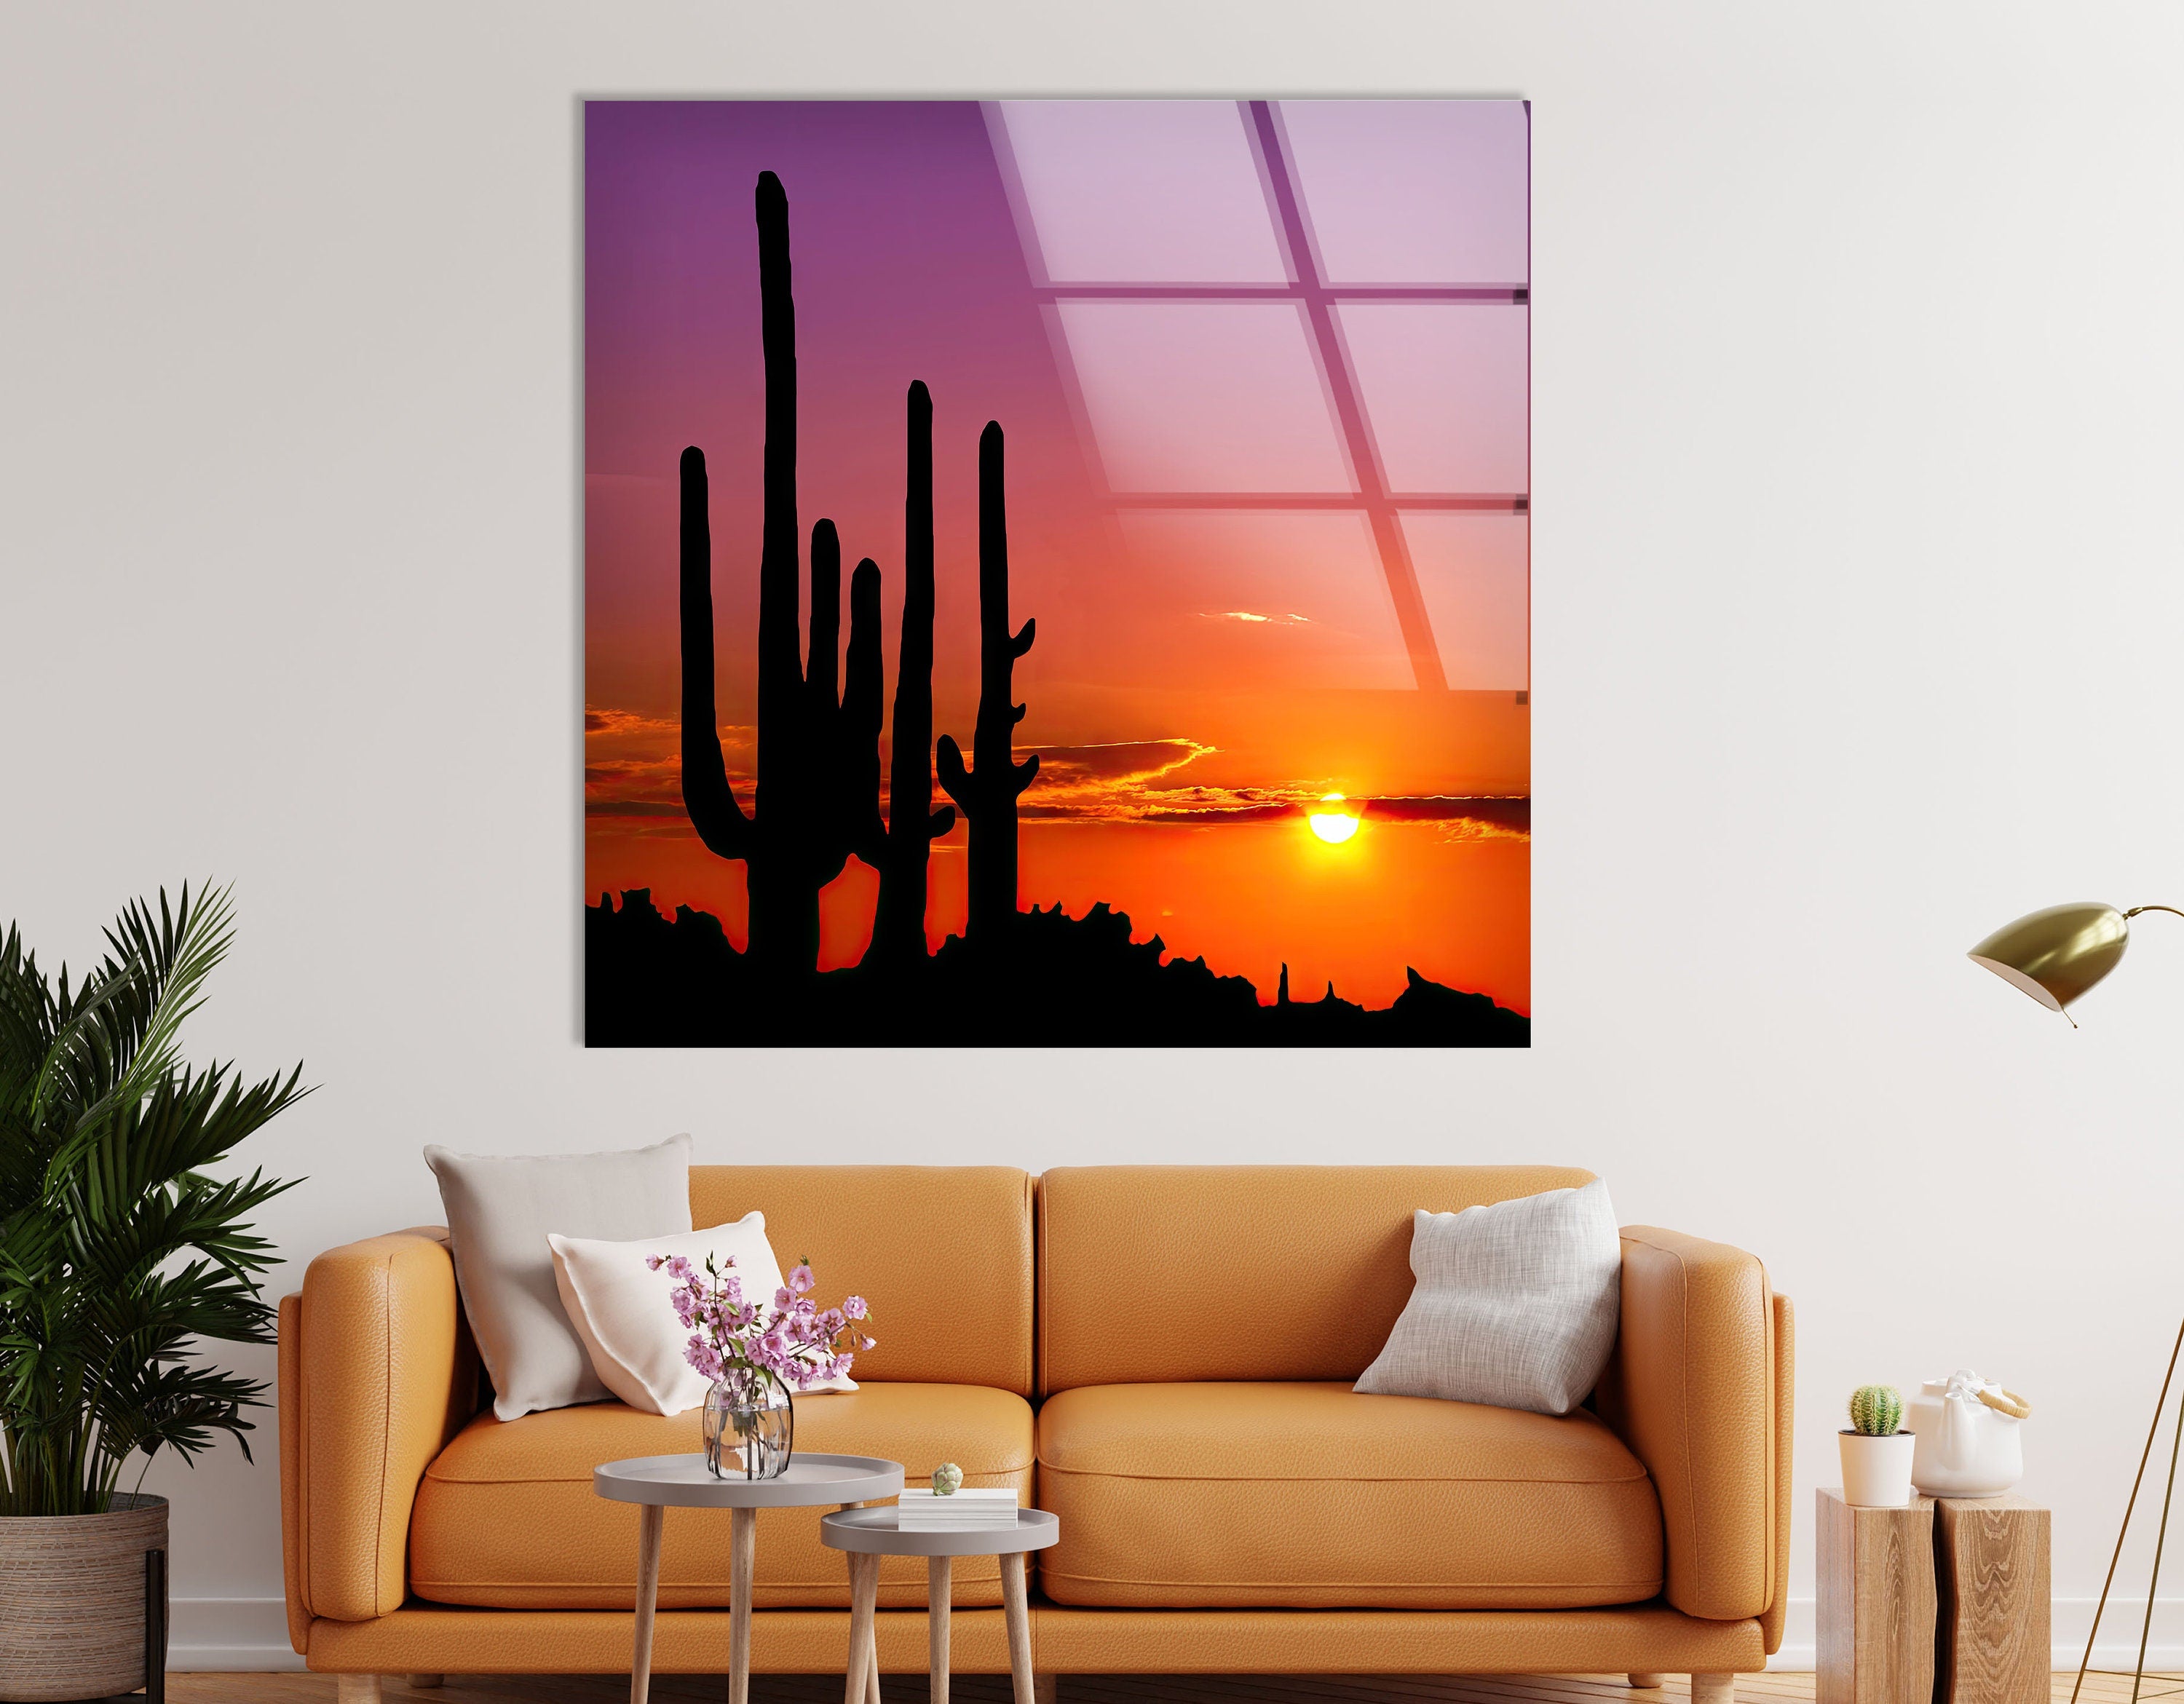 Sonoran Desert Phoenix Arizona Tempered Glass Wall Art